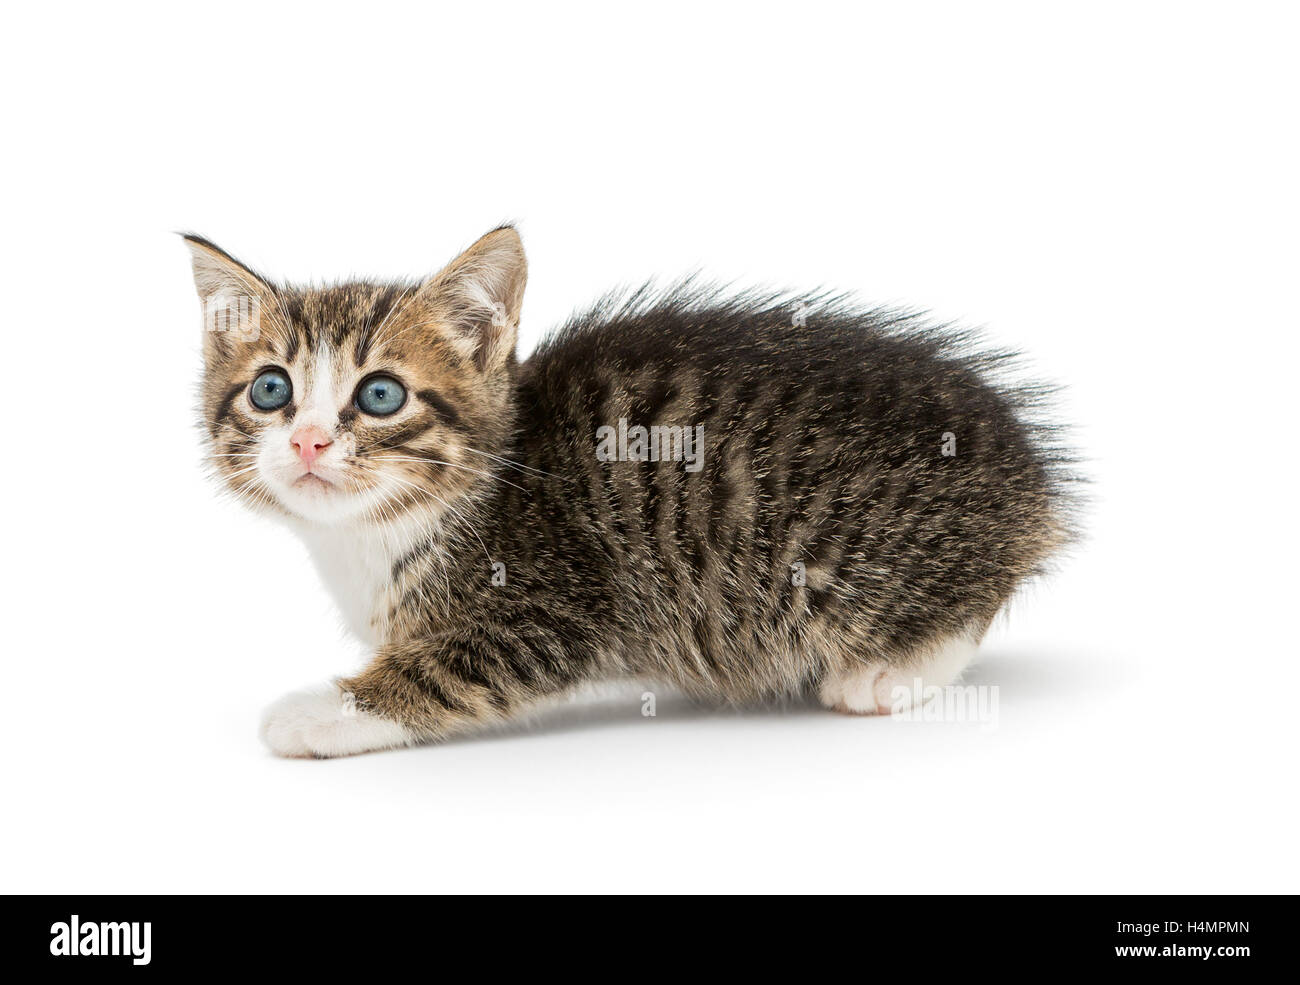 Little fluffy gattino con grandi occhi blu, isolati su sfondo bianco Foto Stock